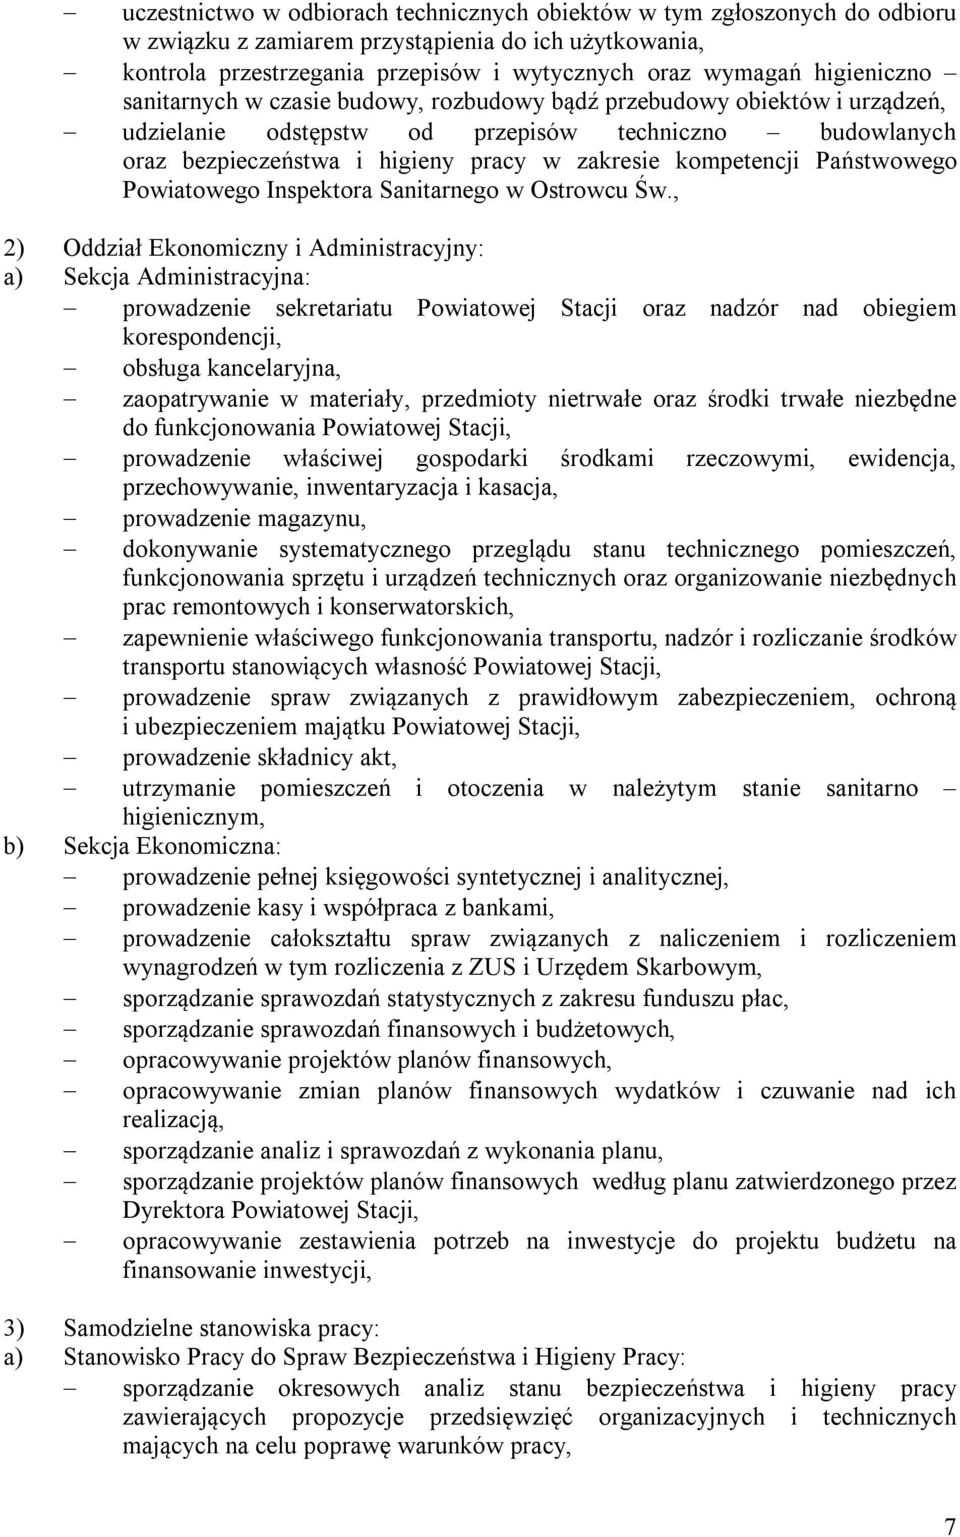 kompetencji Państwowego Powiatowego Inspektora Sanitarnego w Ostrowcu Św.